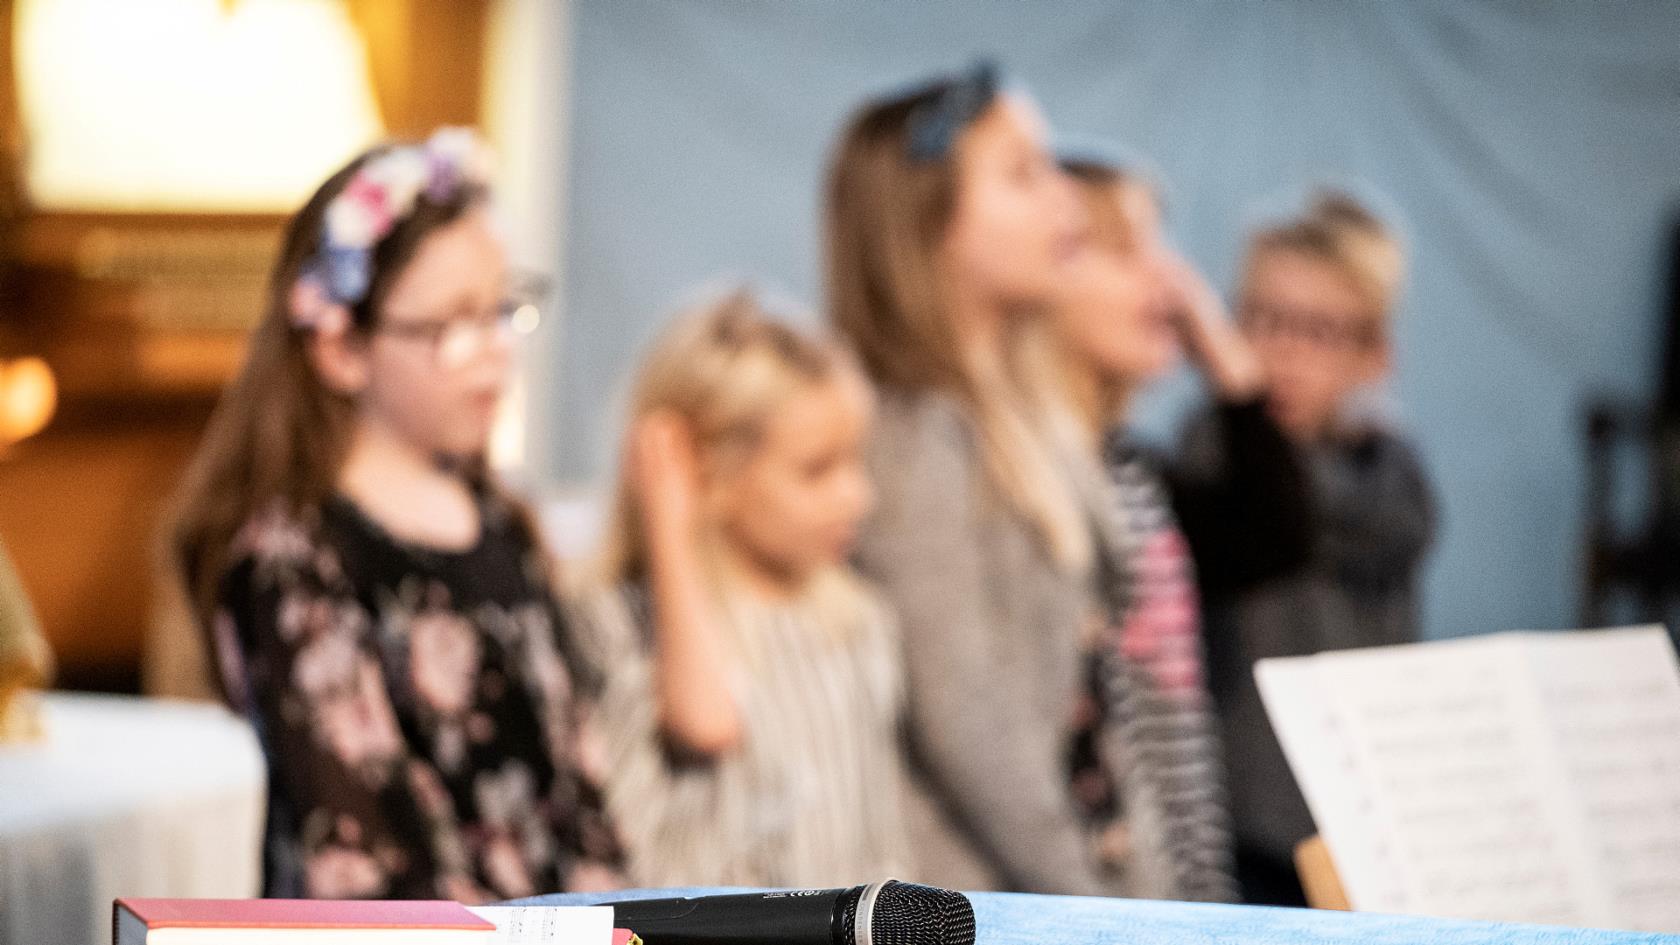 En psalmbok och en mikrofon ligger på ett bord. Bakom sjunger några barn.